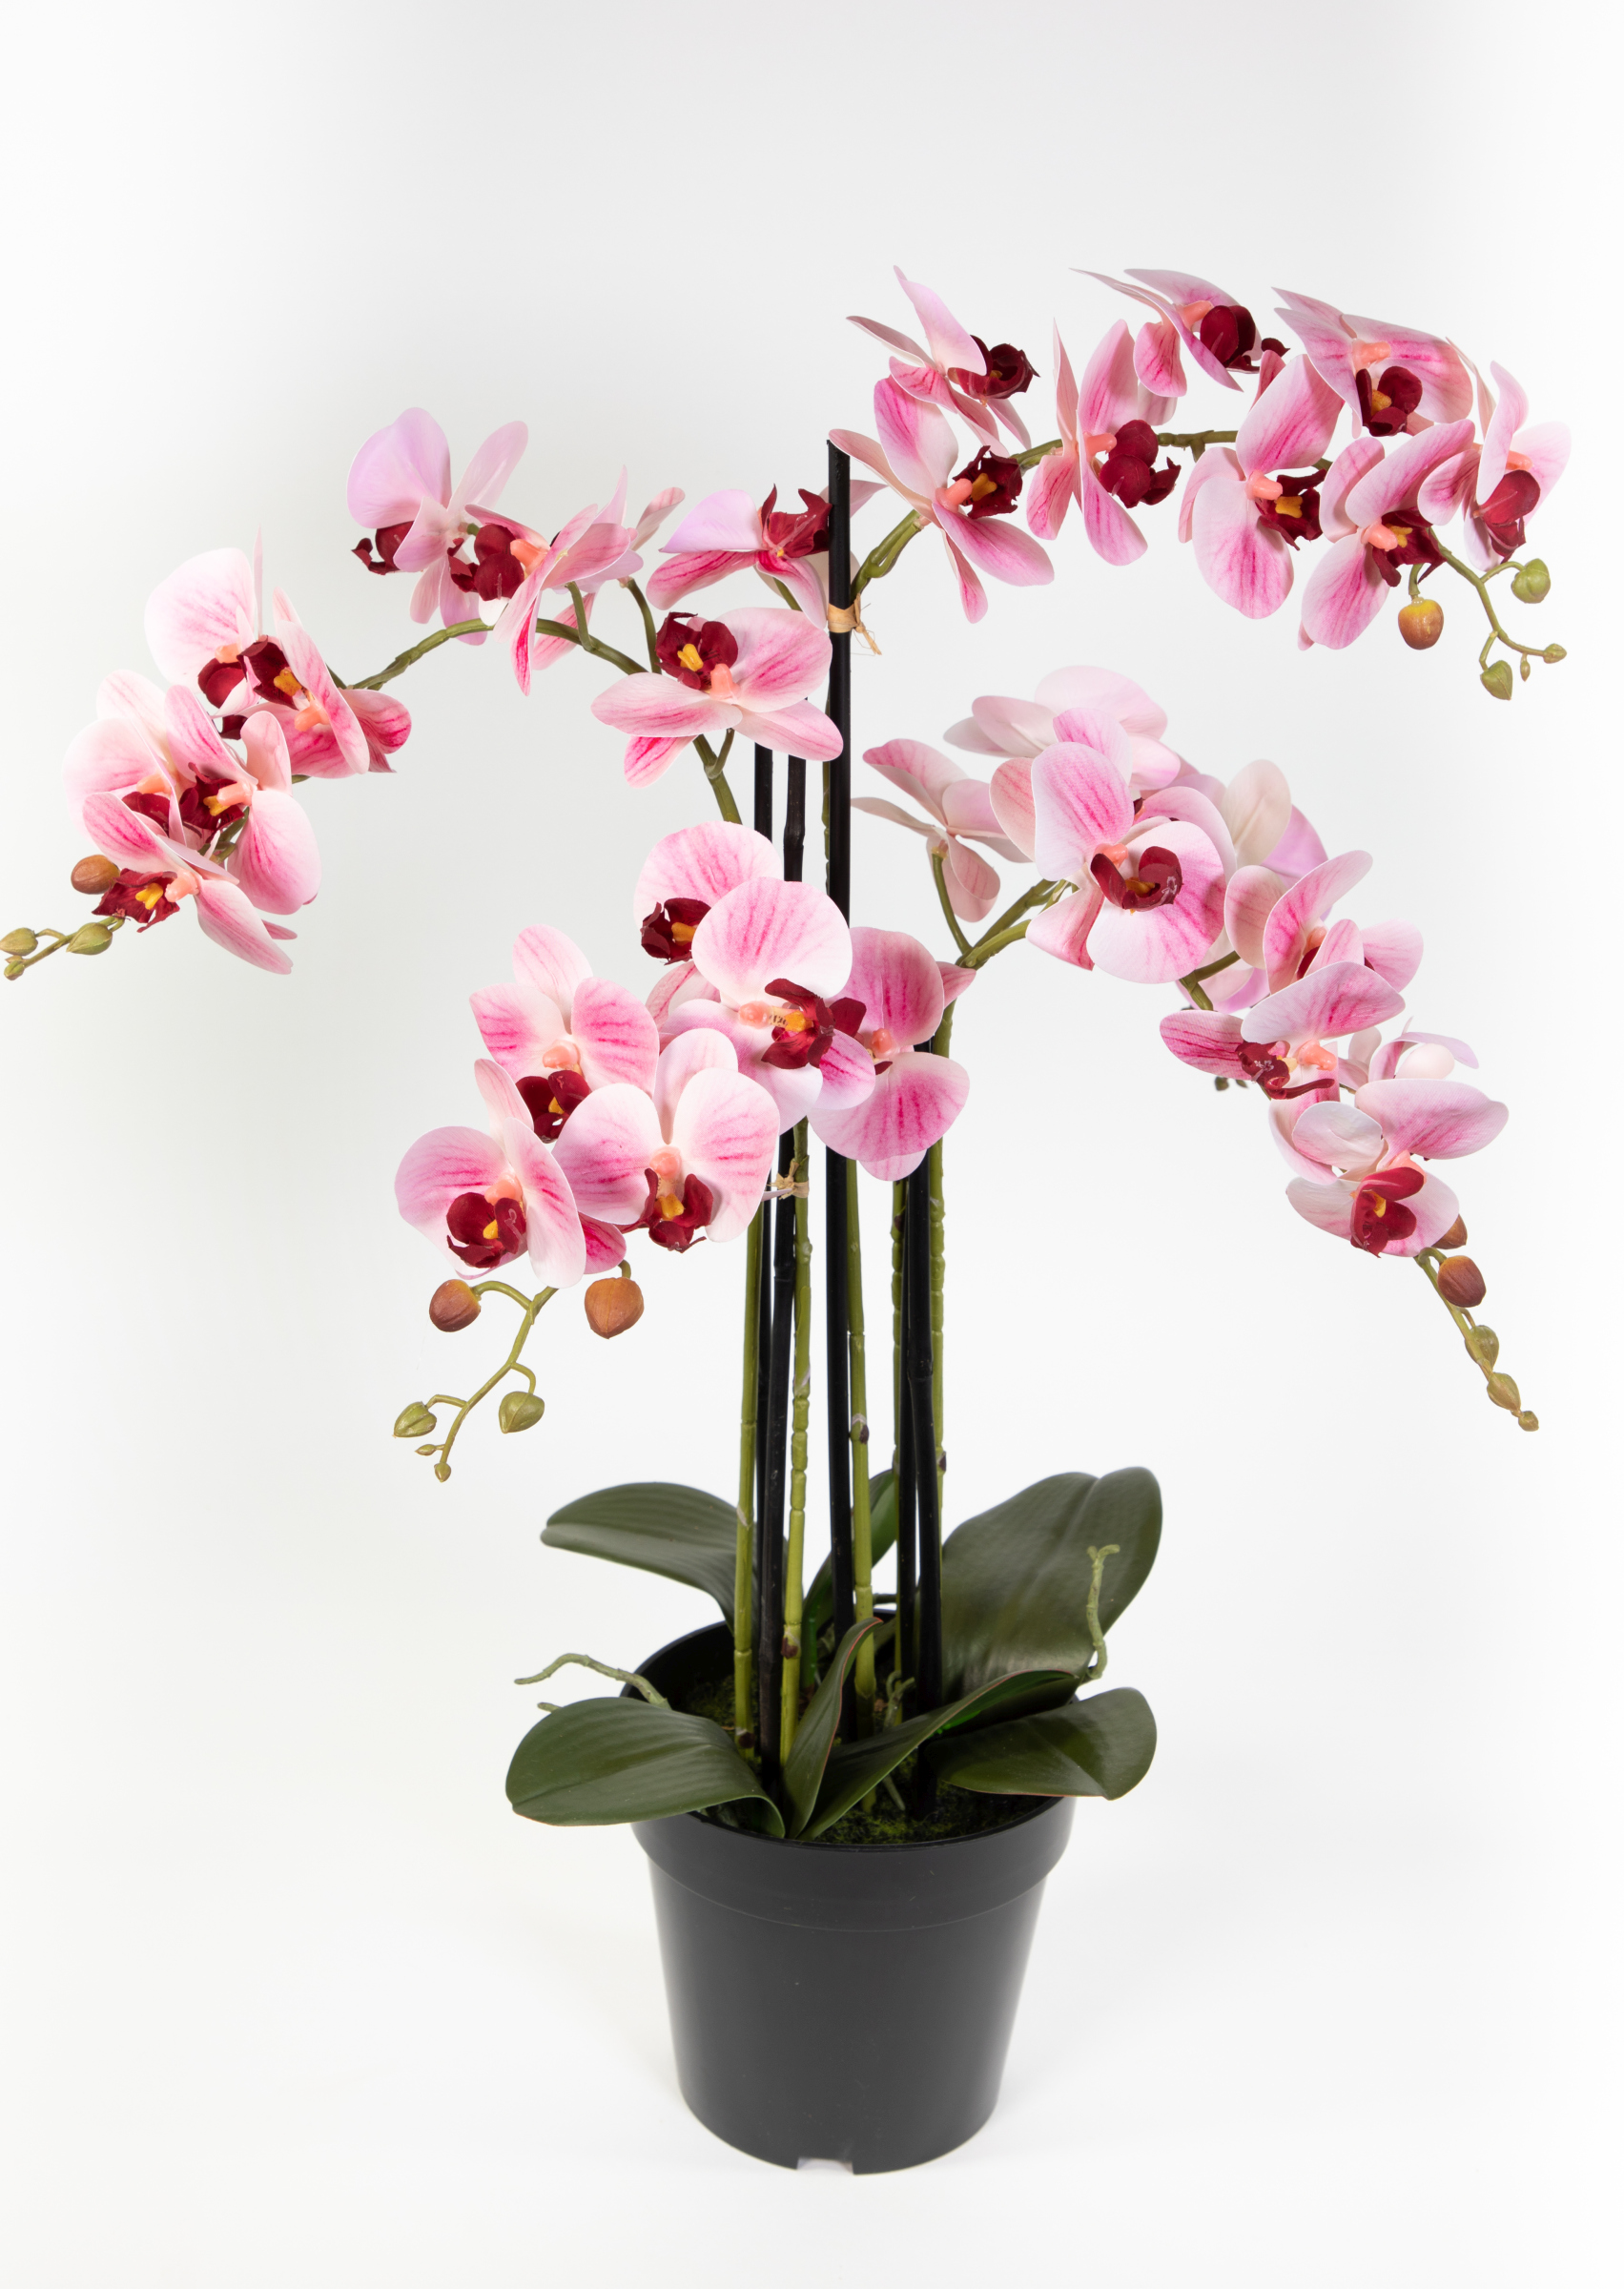 Orchidee 80x50cm Real Touch rosa-weiß CG künstliche Orchideen Blumen Kunstpflanzen Kunstblumen